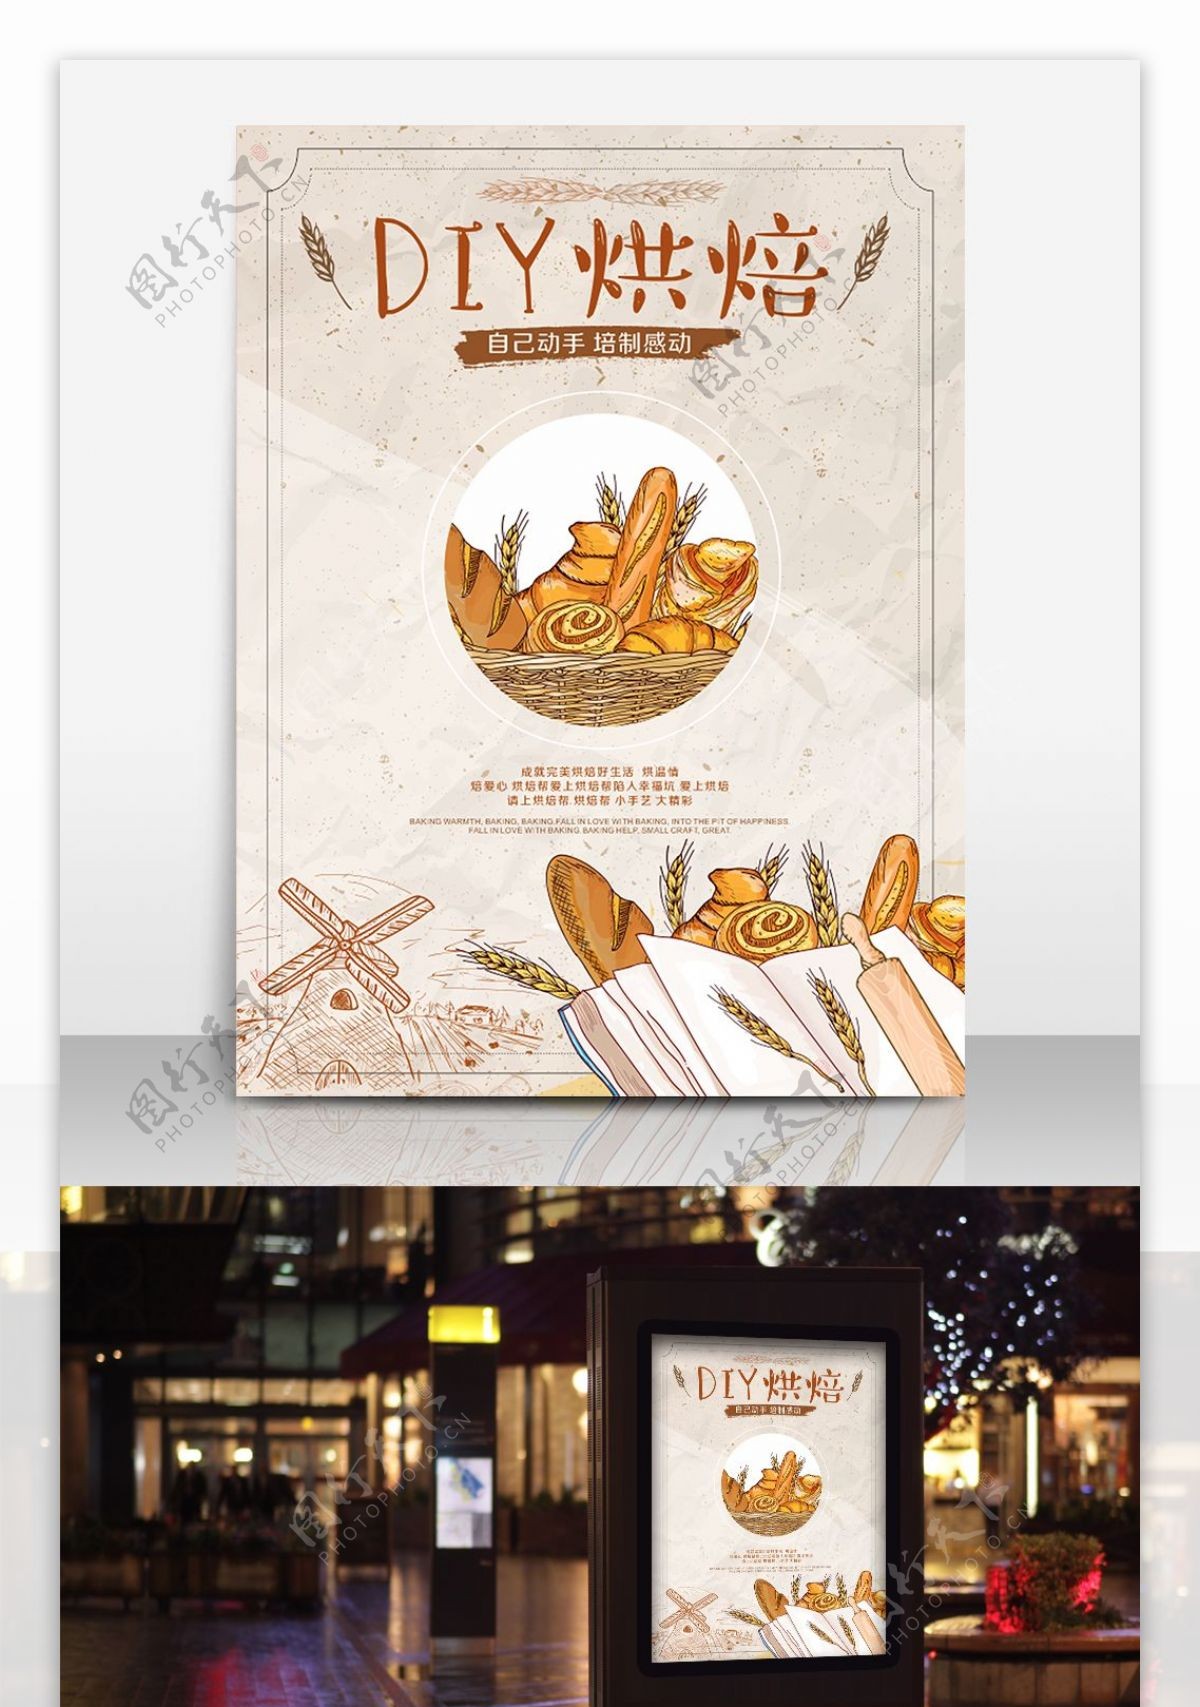 DIY美食面包店宣传海报烘焙广告